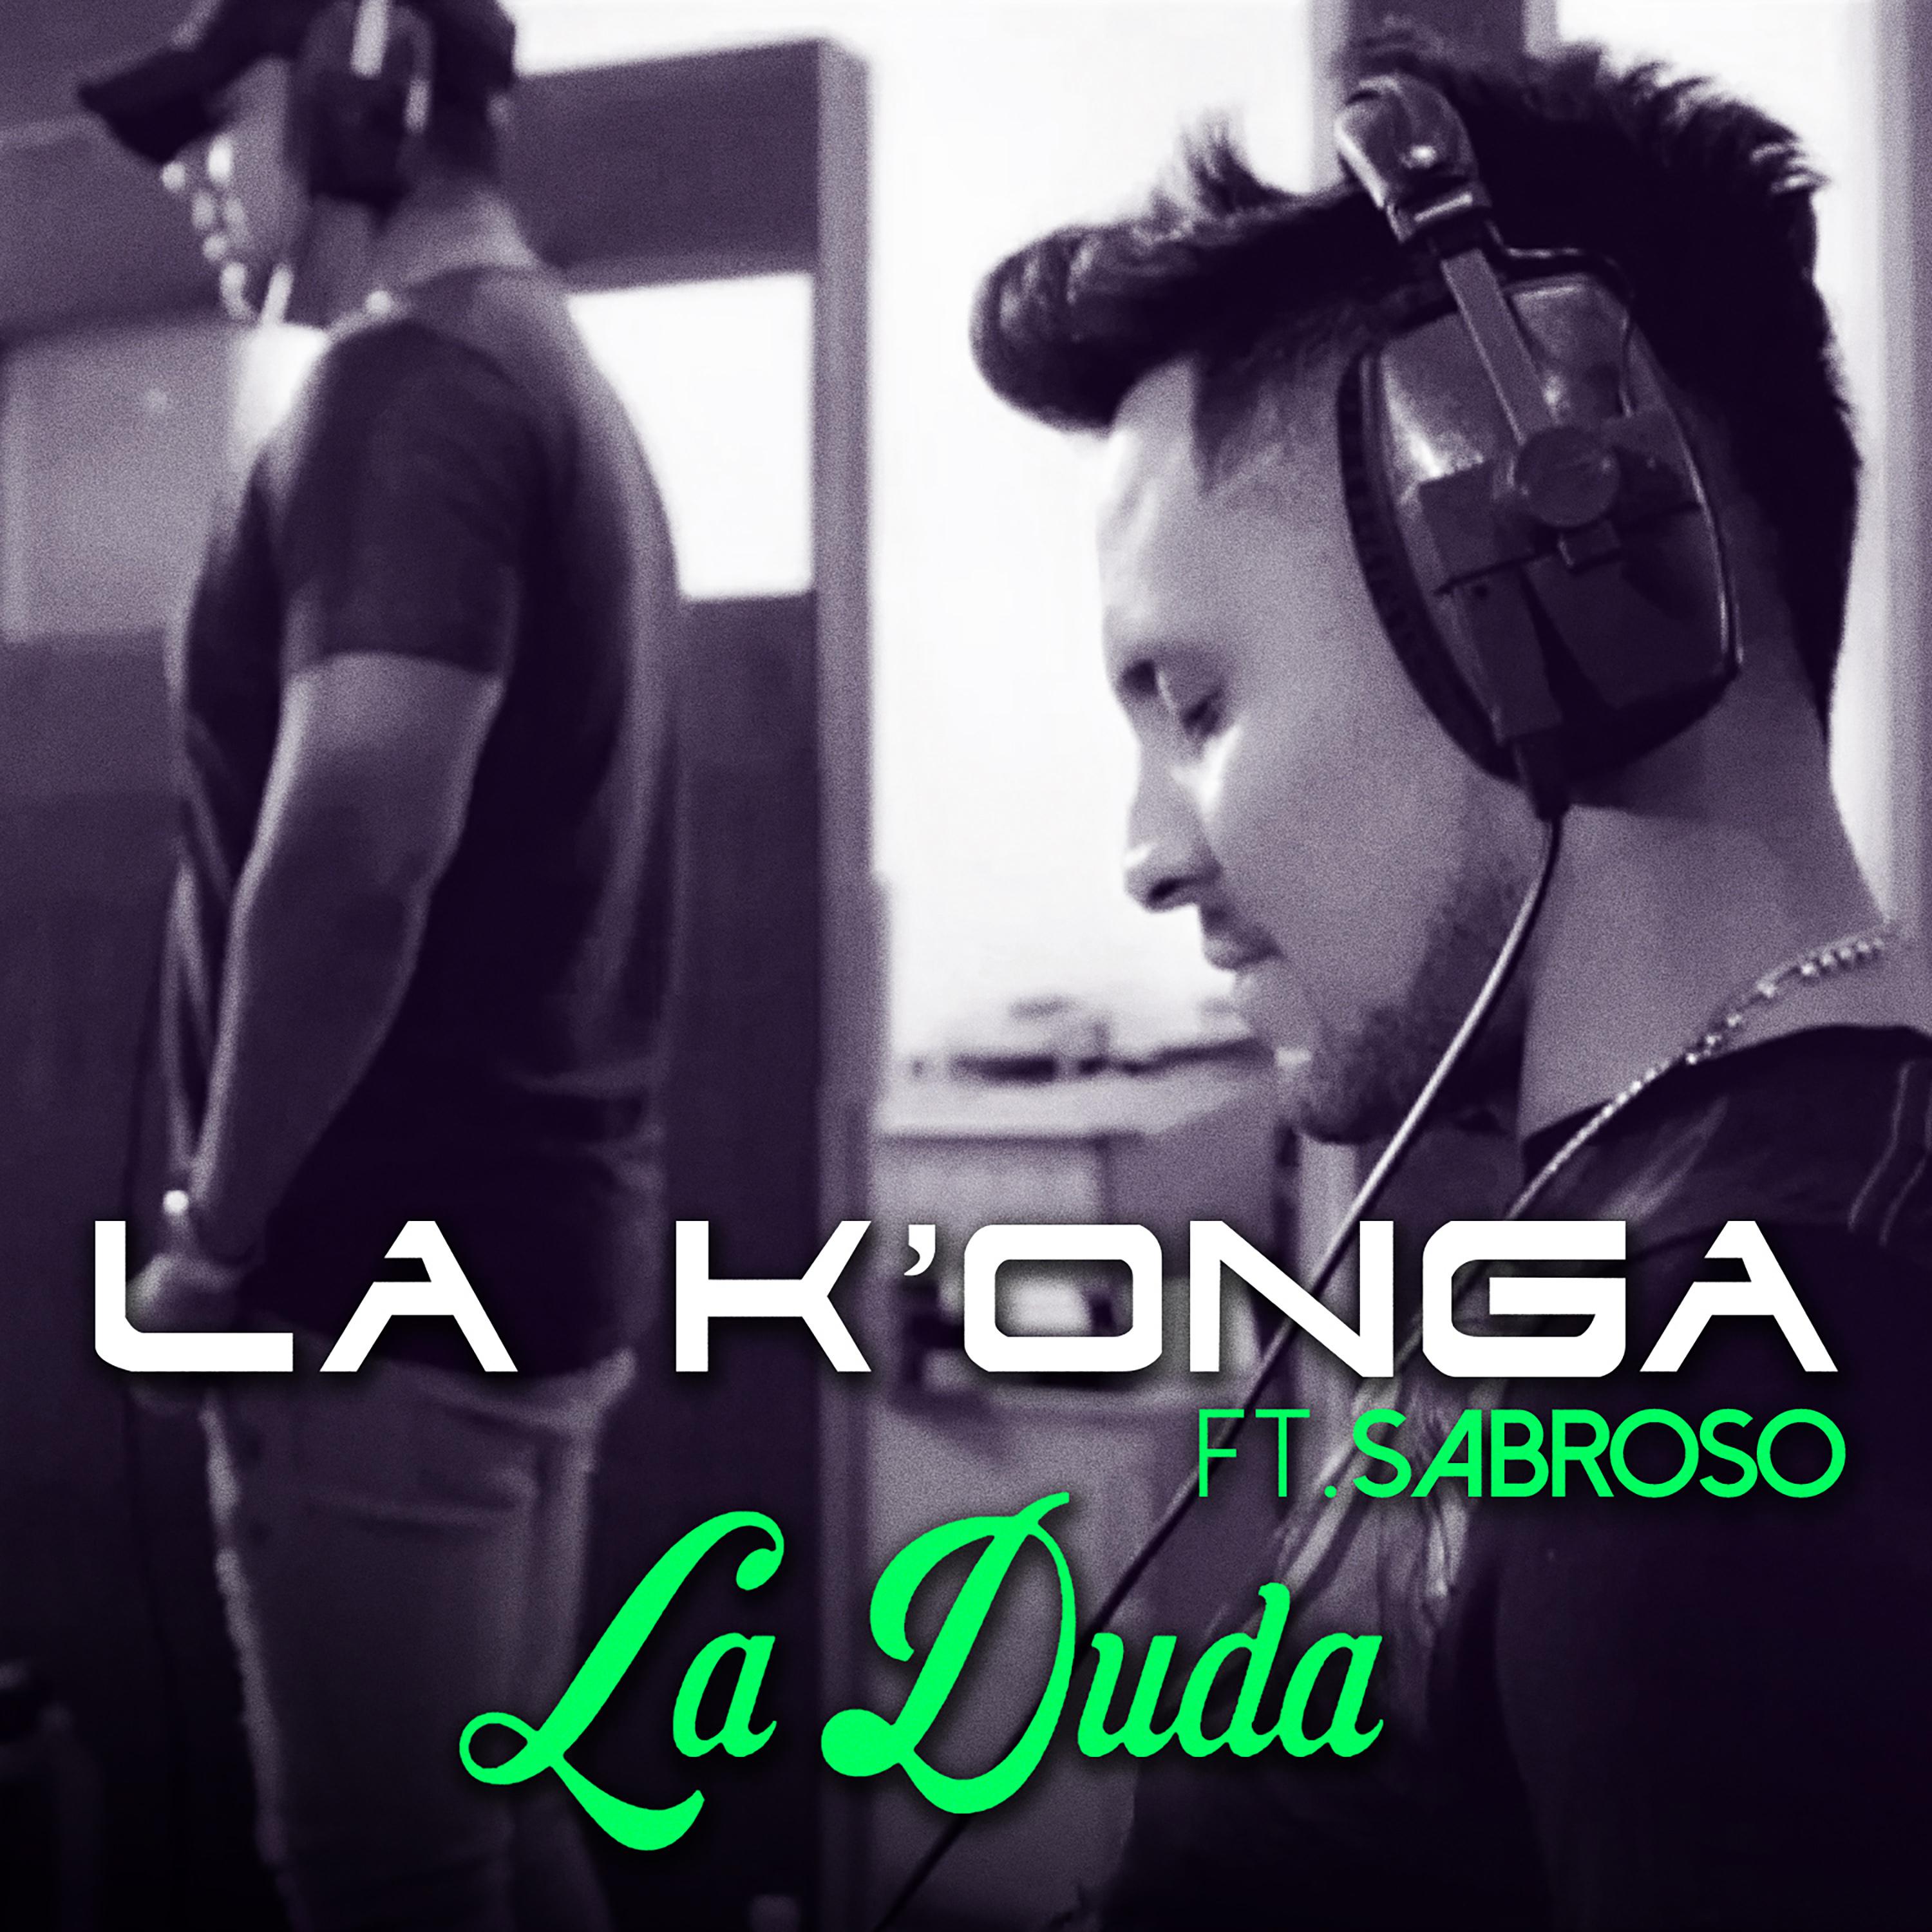 La Duda (Single)